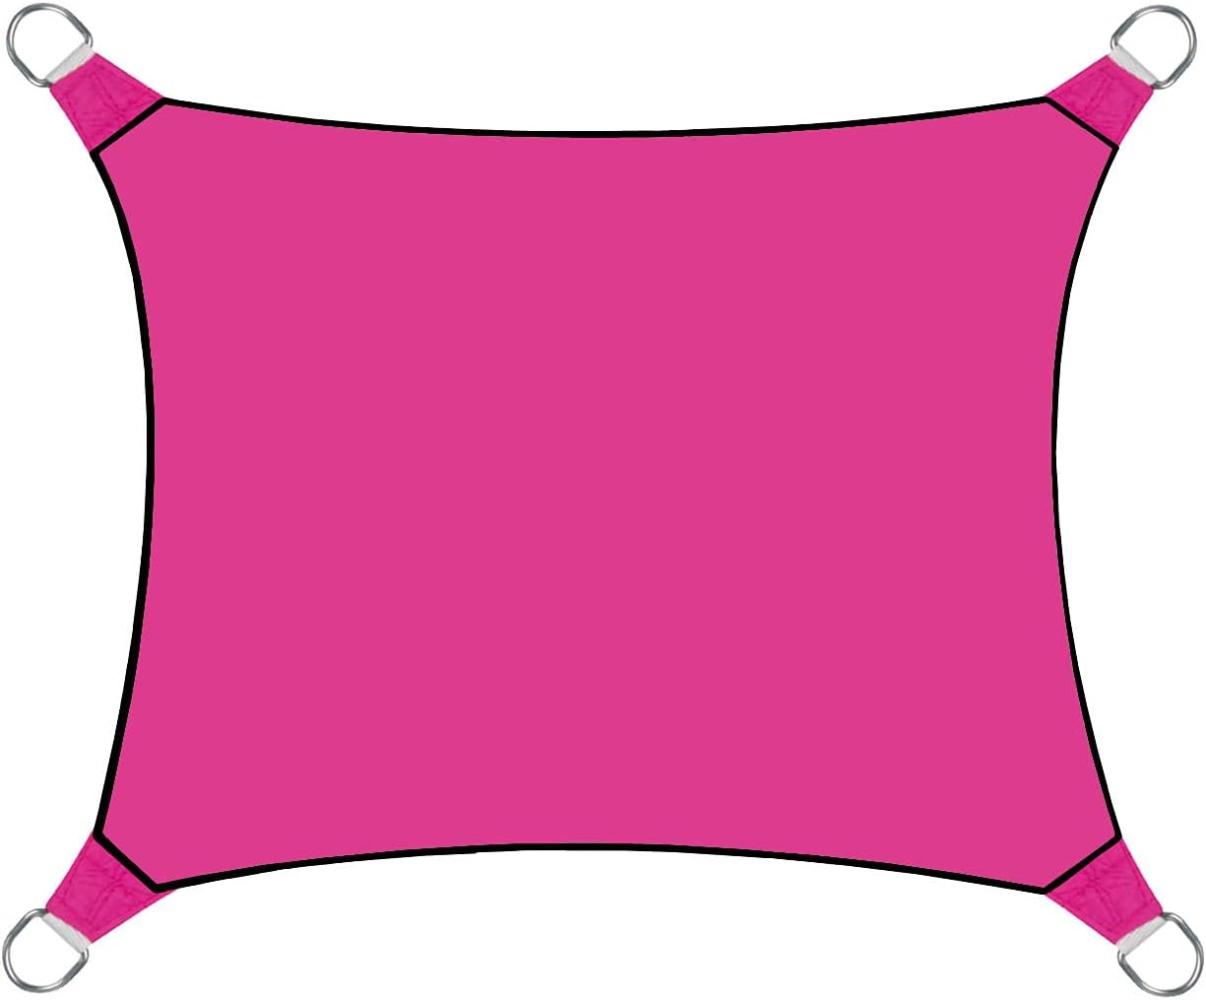 Sonnensegel Rechteckig 2x3m Pink - Sonnenschutzsegel für Balkon / Terrassensegel Bild 1